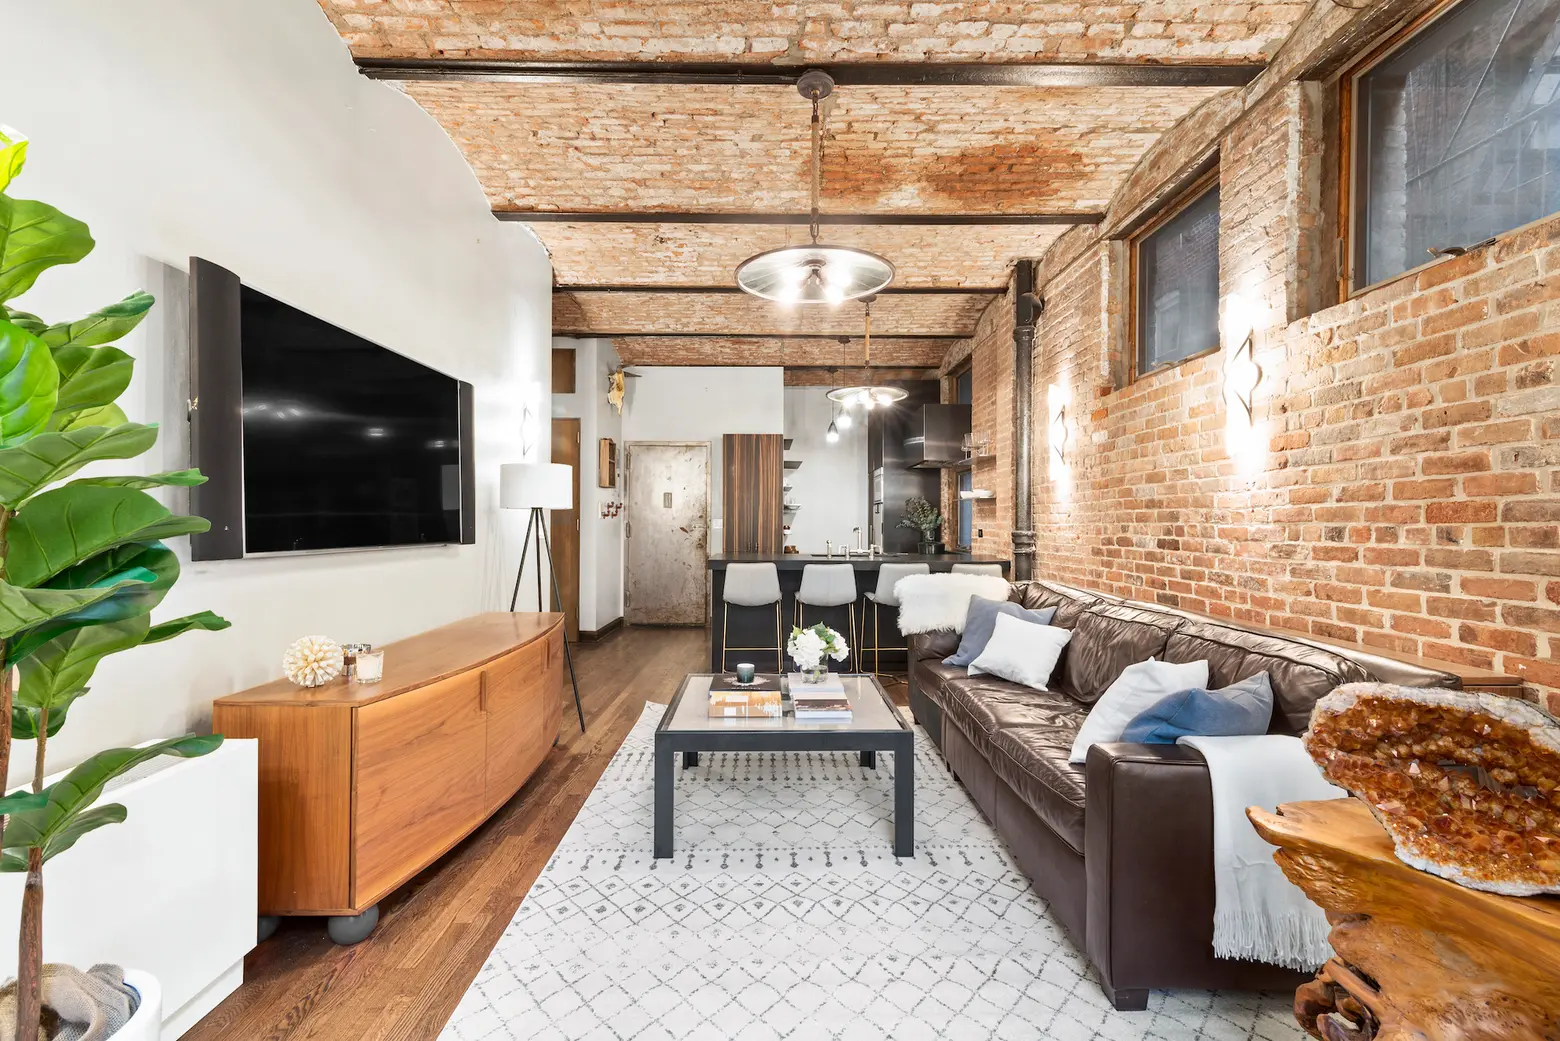 Asking $995K, this rustic West Village co-op has soaring brick barrel-vaulted ceilings